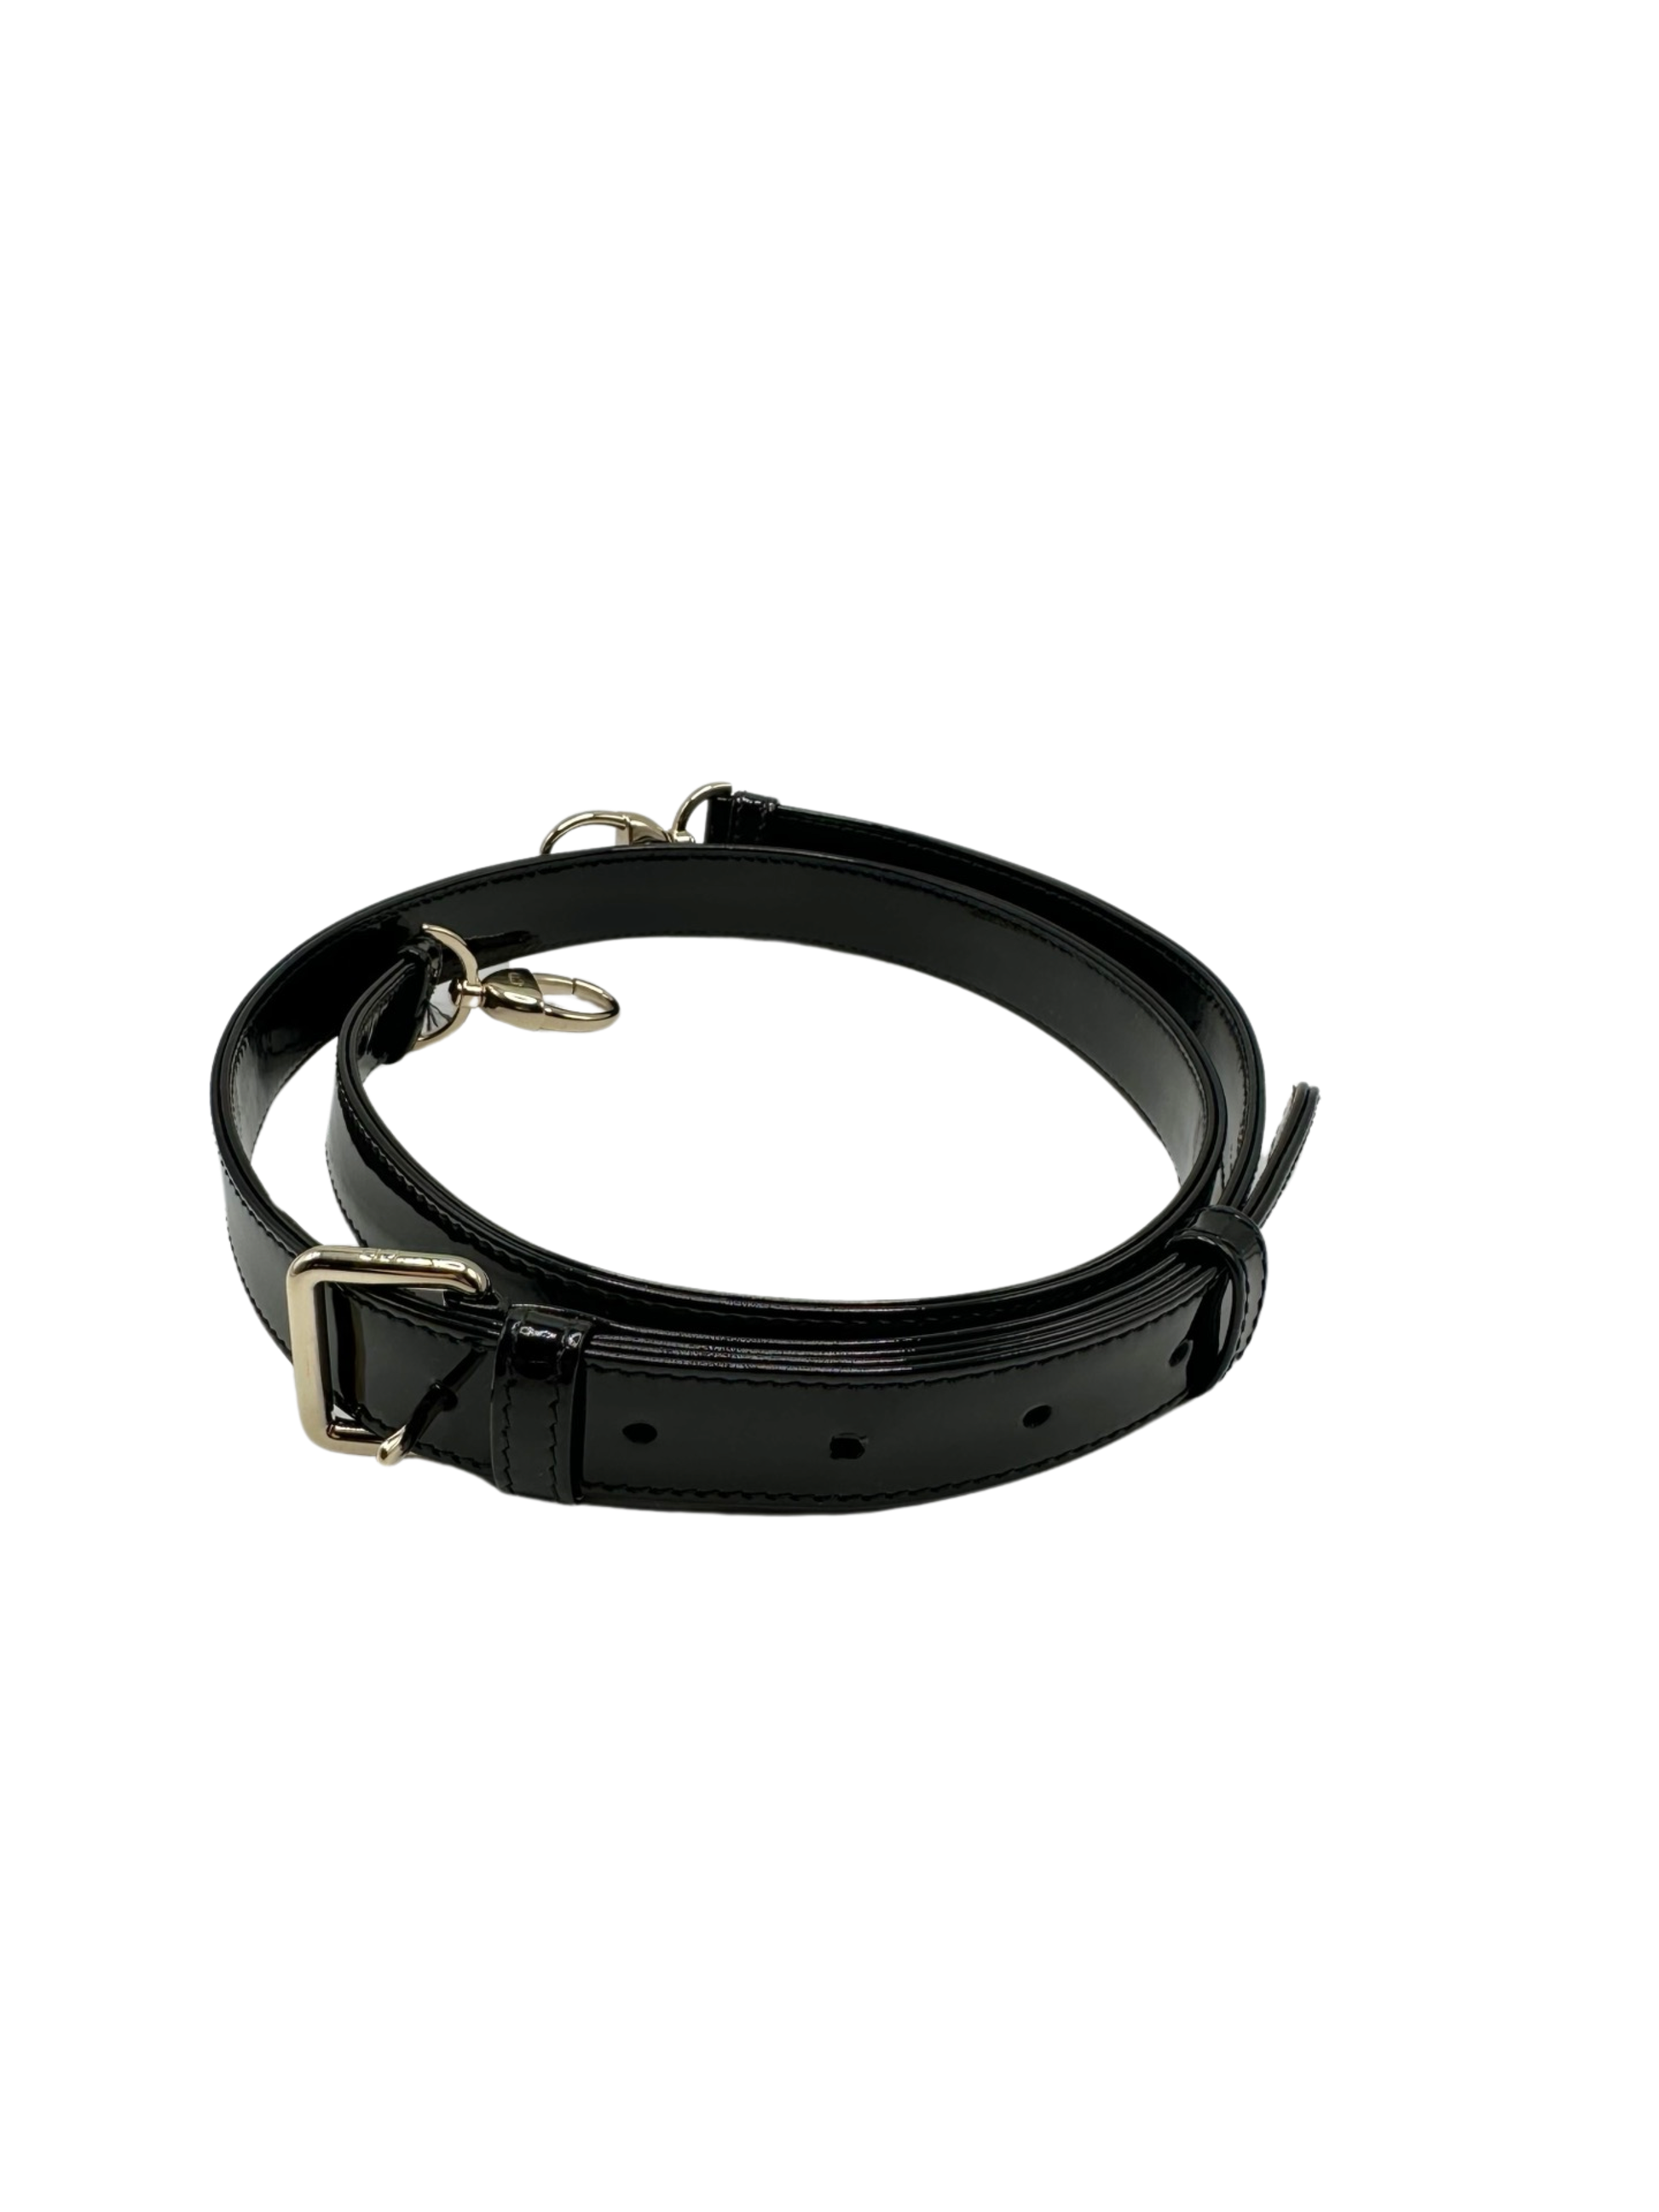 Detachable black patent leather strap